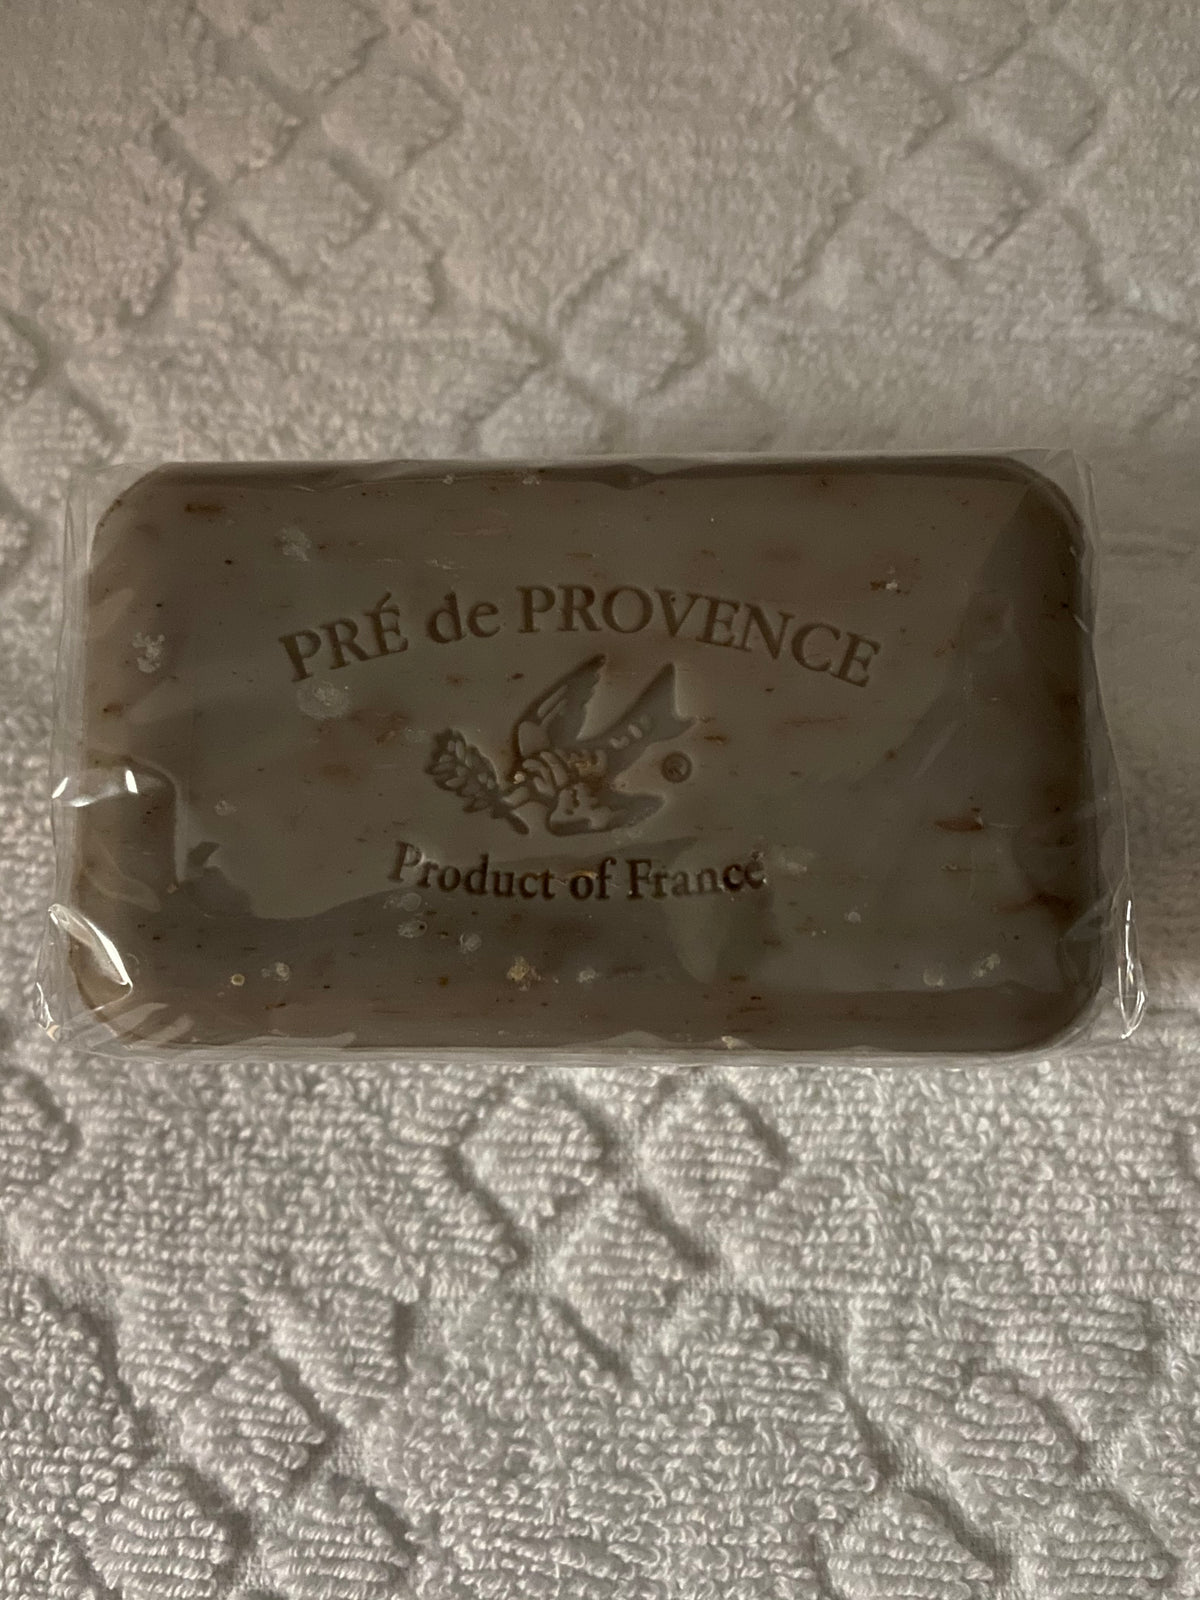 PRE DE PROVENCE SHEA BUTTER ENRICHED SOAPS